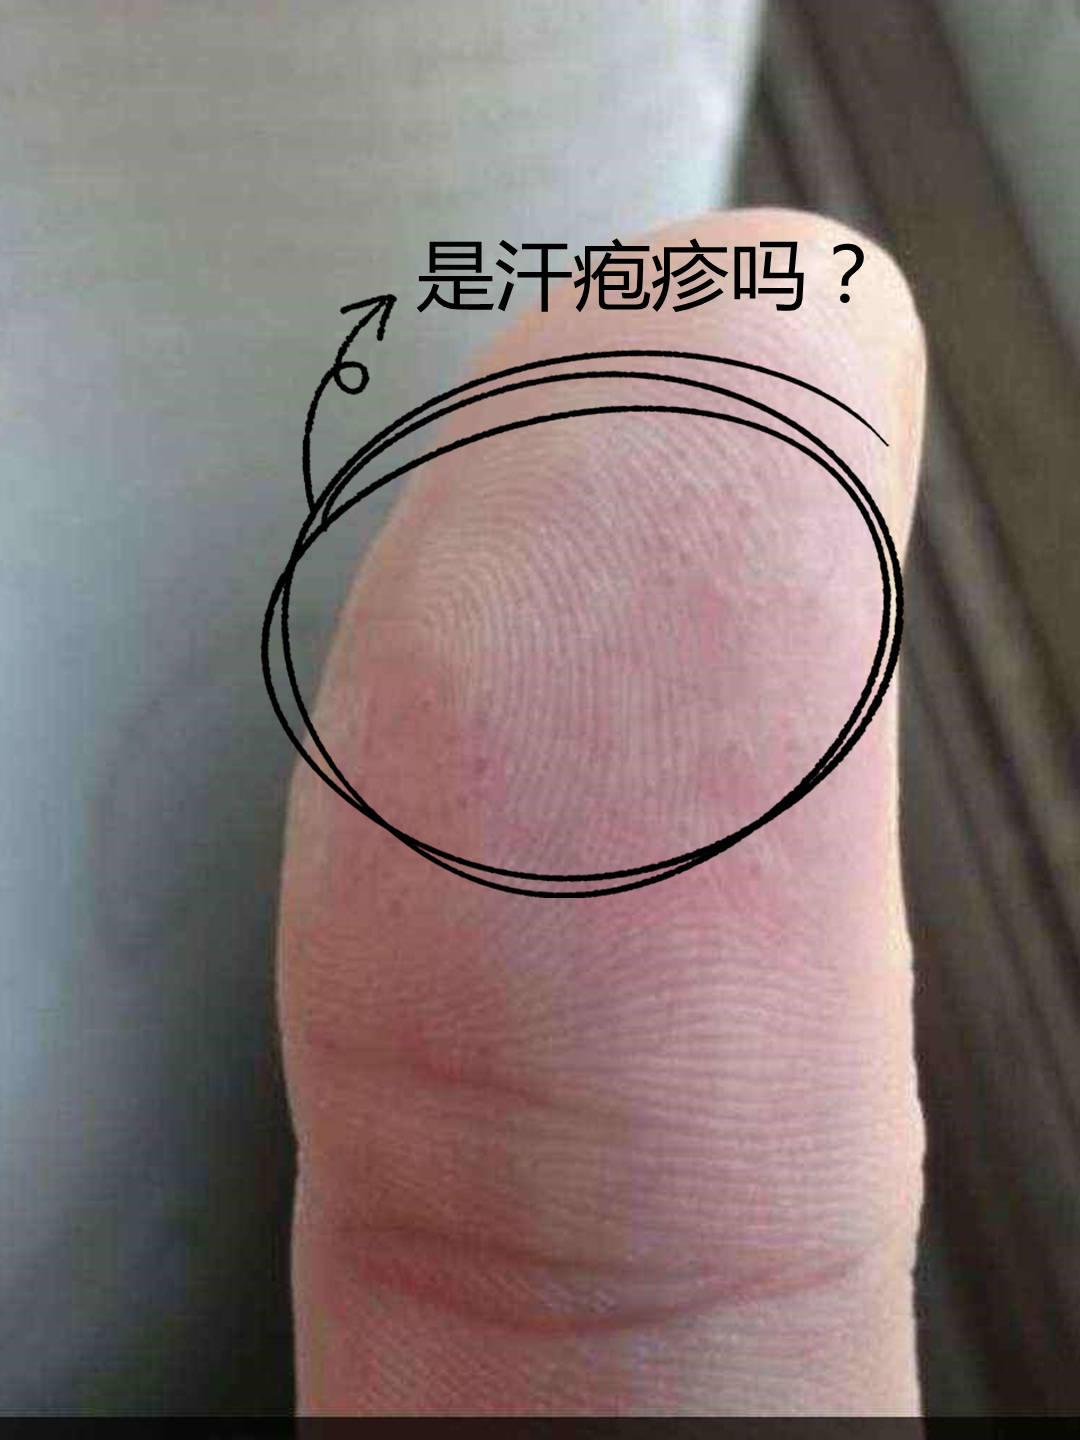 手指上有很多透明小水泡,是汗疱疹吗?_皮肤